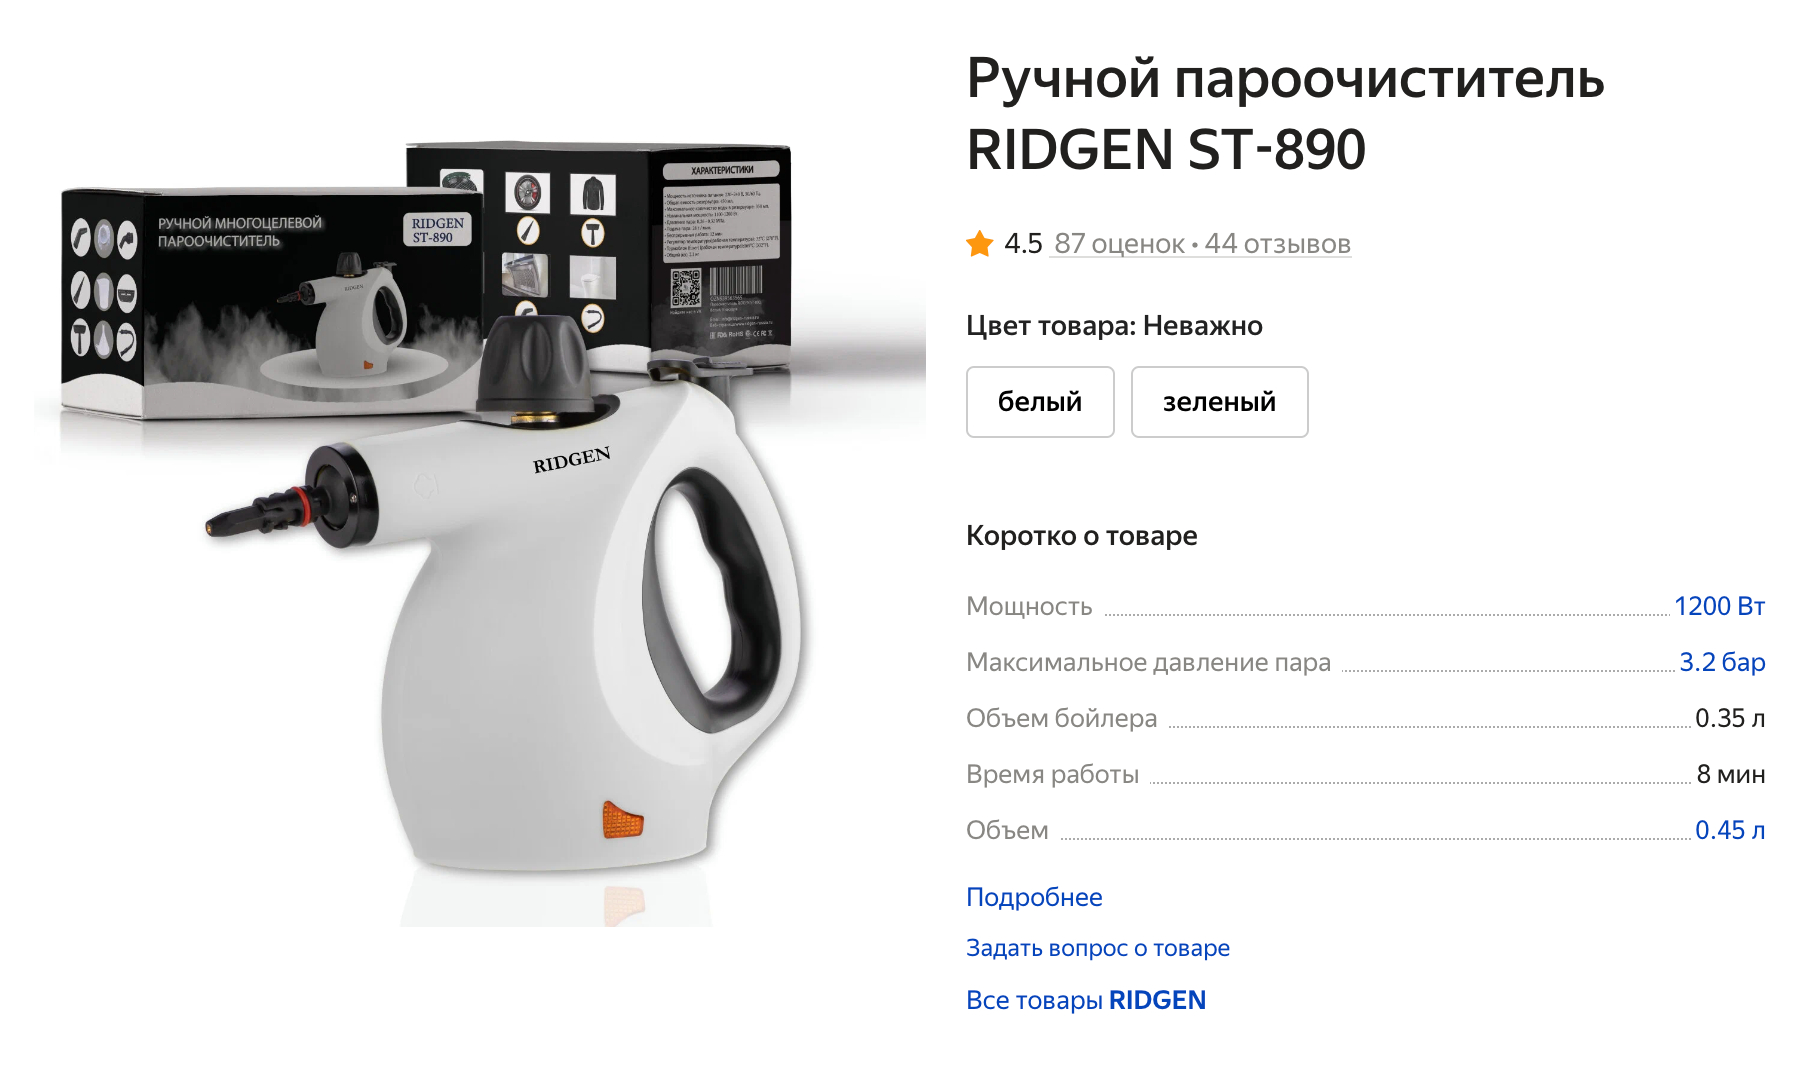 Так выглядит ручной пароочиститель для уборки небольших поверхностей и обработки углов. Источник: market.yandex.ru